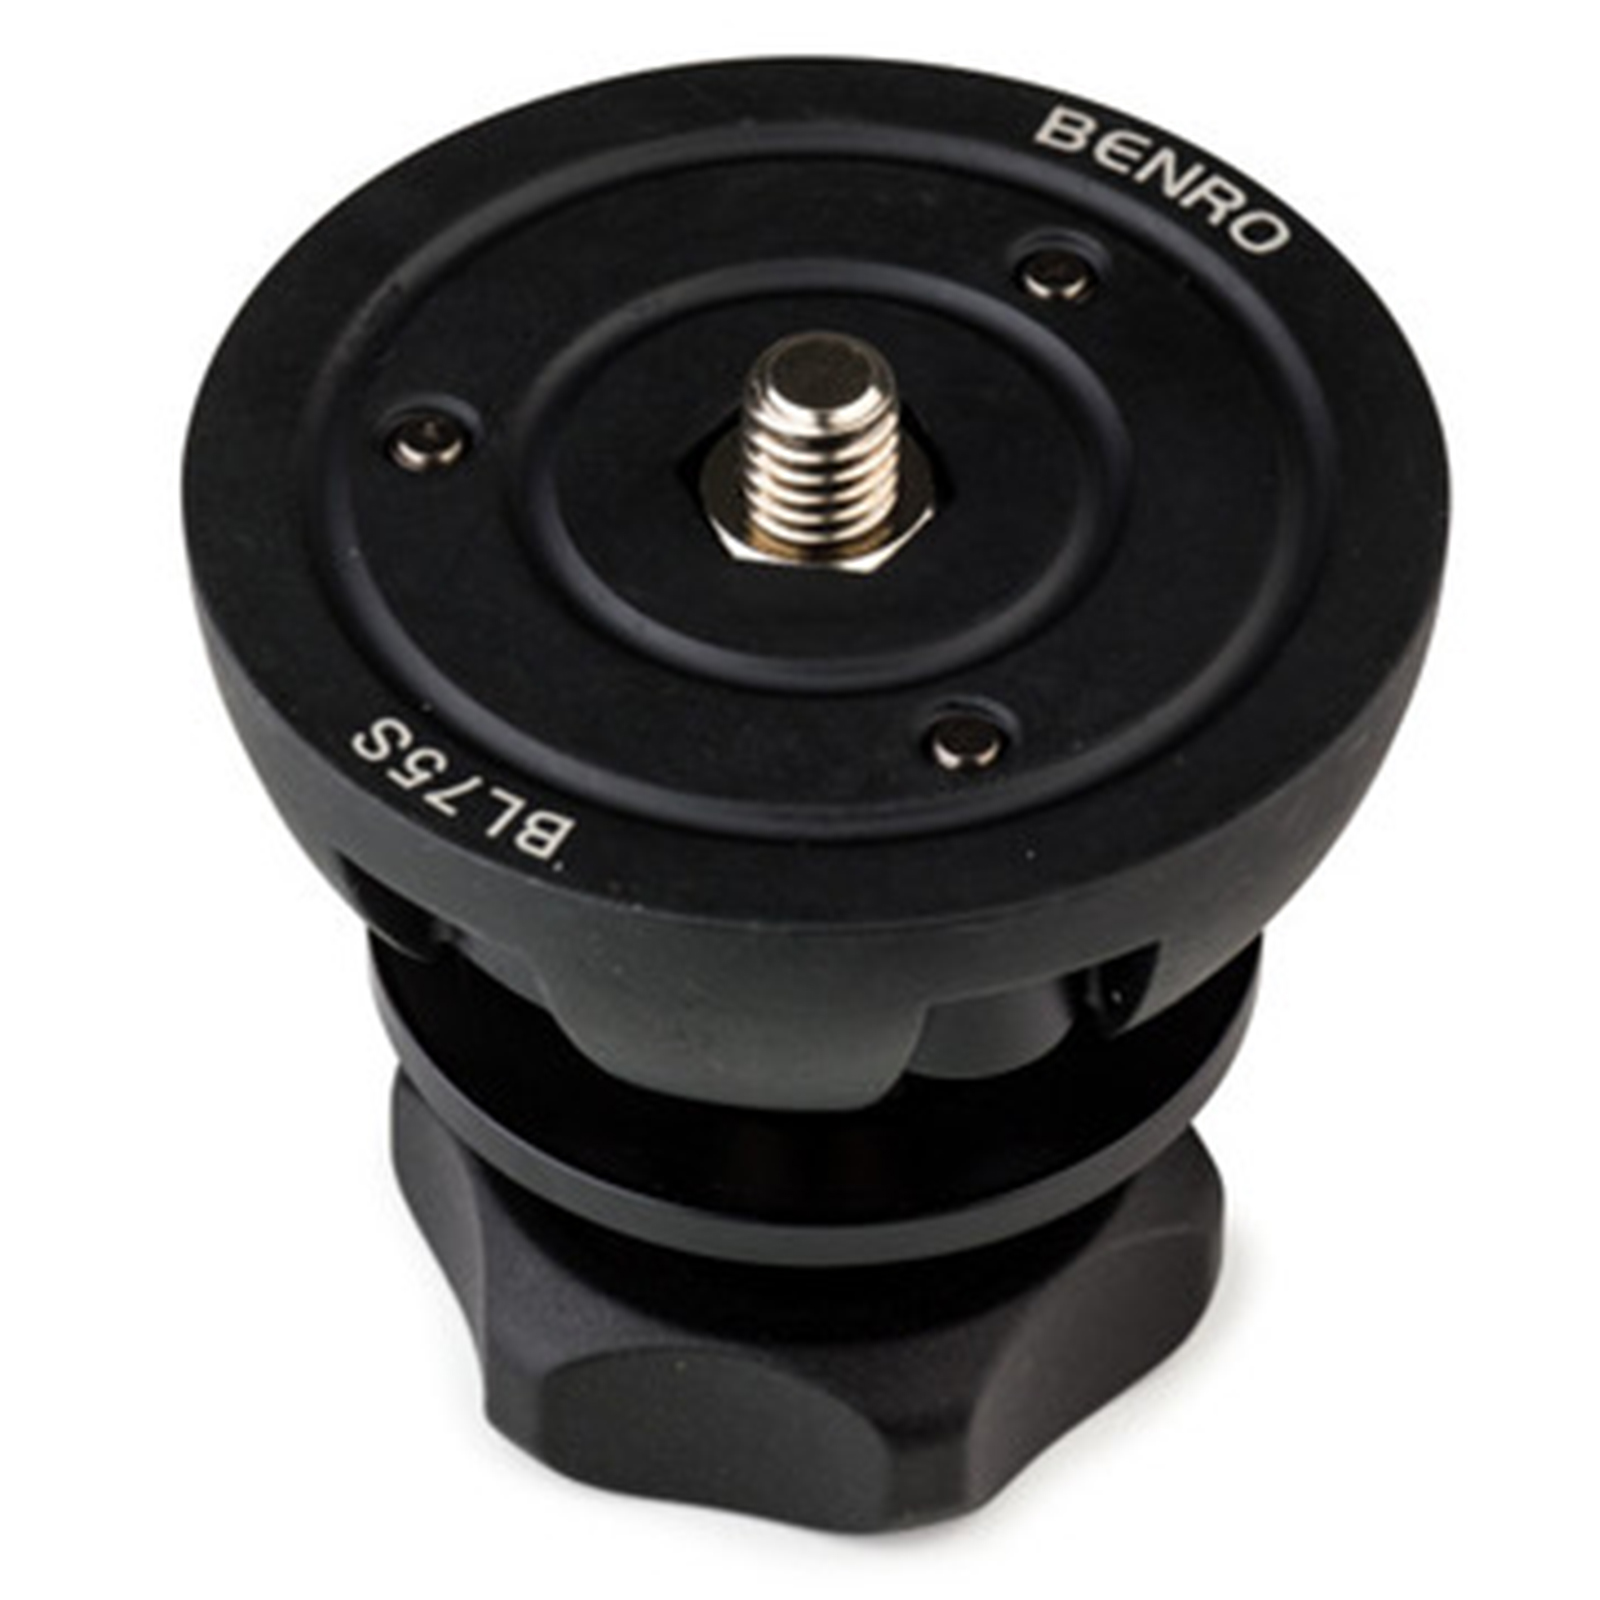 Image of Benro 75mm Half Ball Adapter for HH75AV